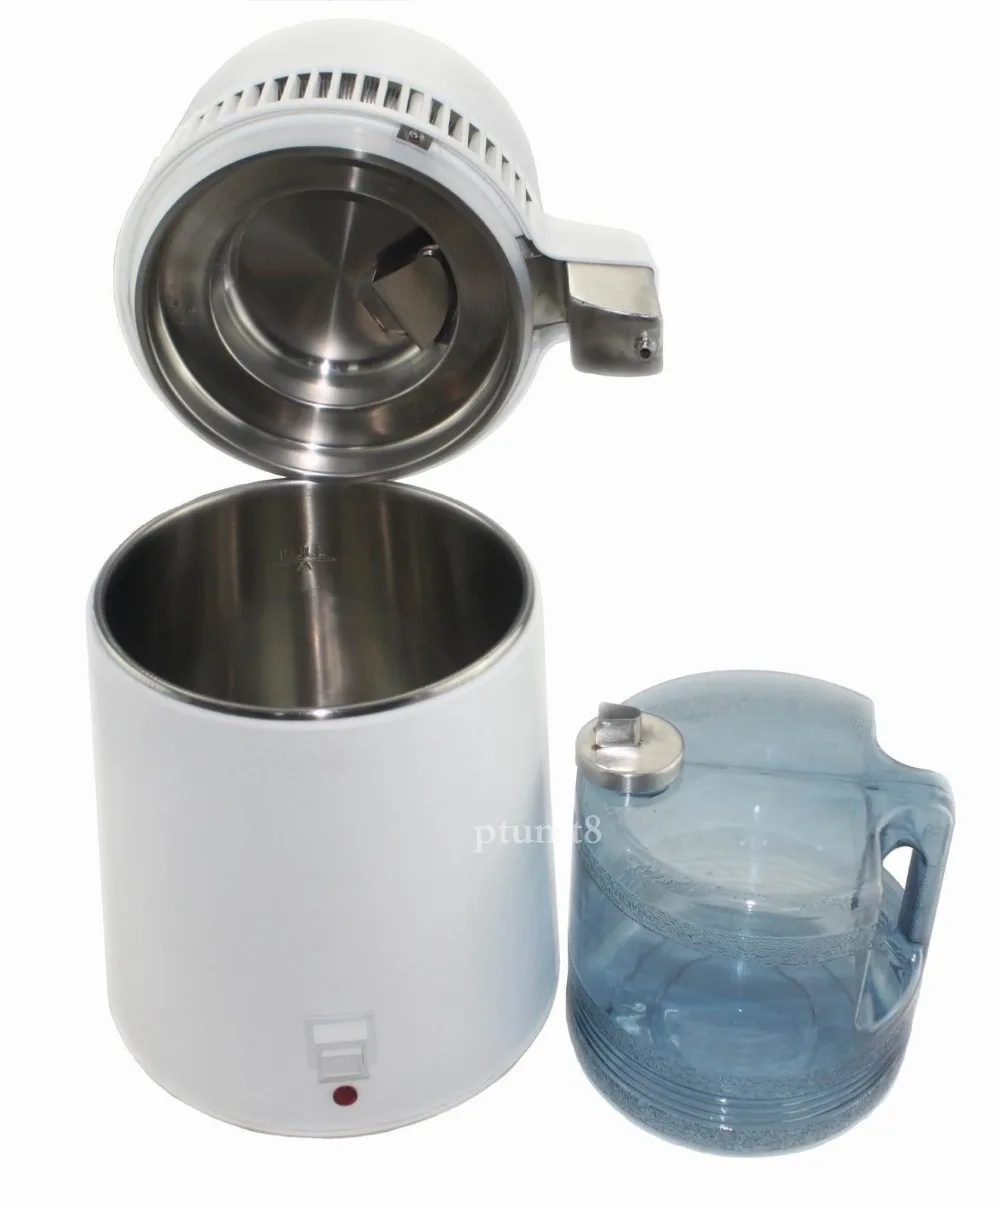 New-4L-Water-Distiller-Pure-Purifier-Filter-Stainless-Steel-Filter-Cap-Best-007 New-4L-Water-Distiller-Pure-Purifier-Filter-St